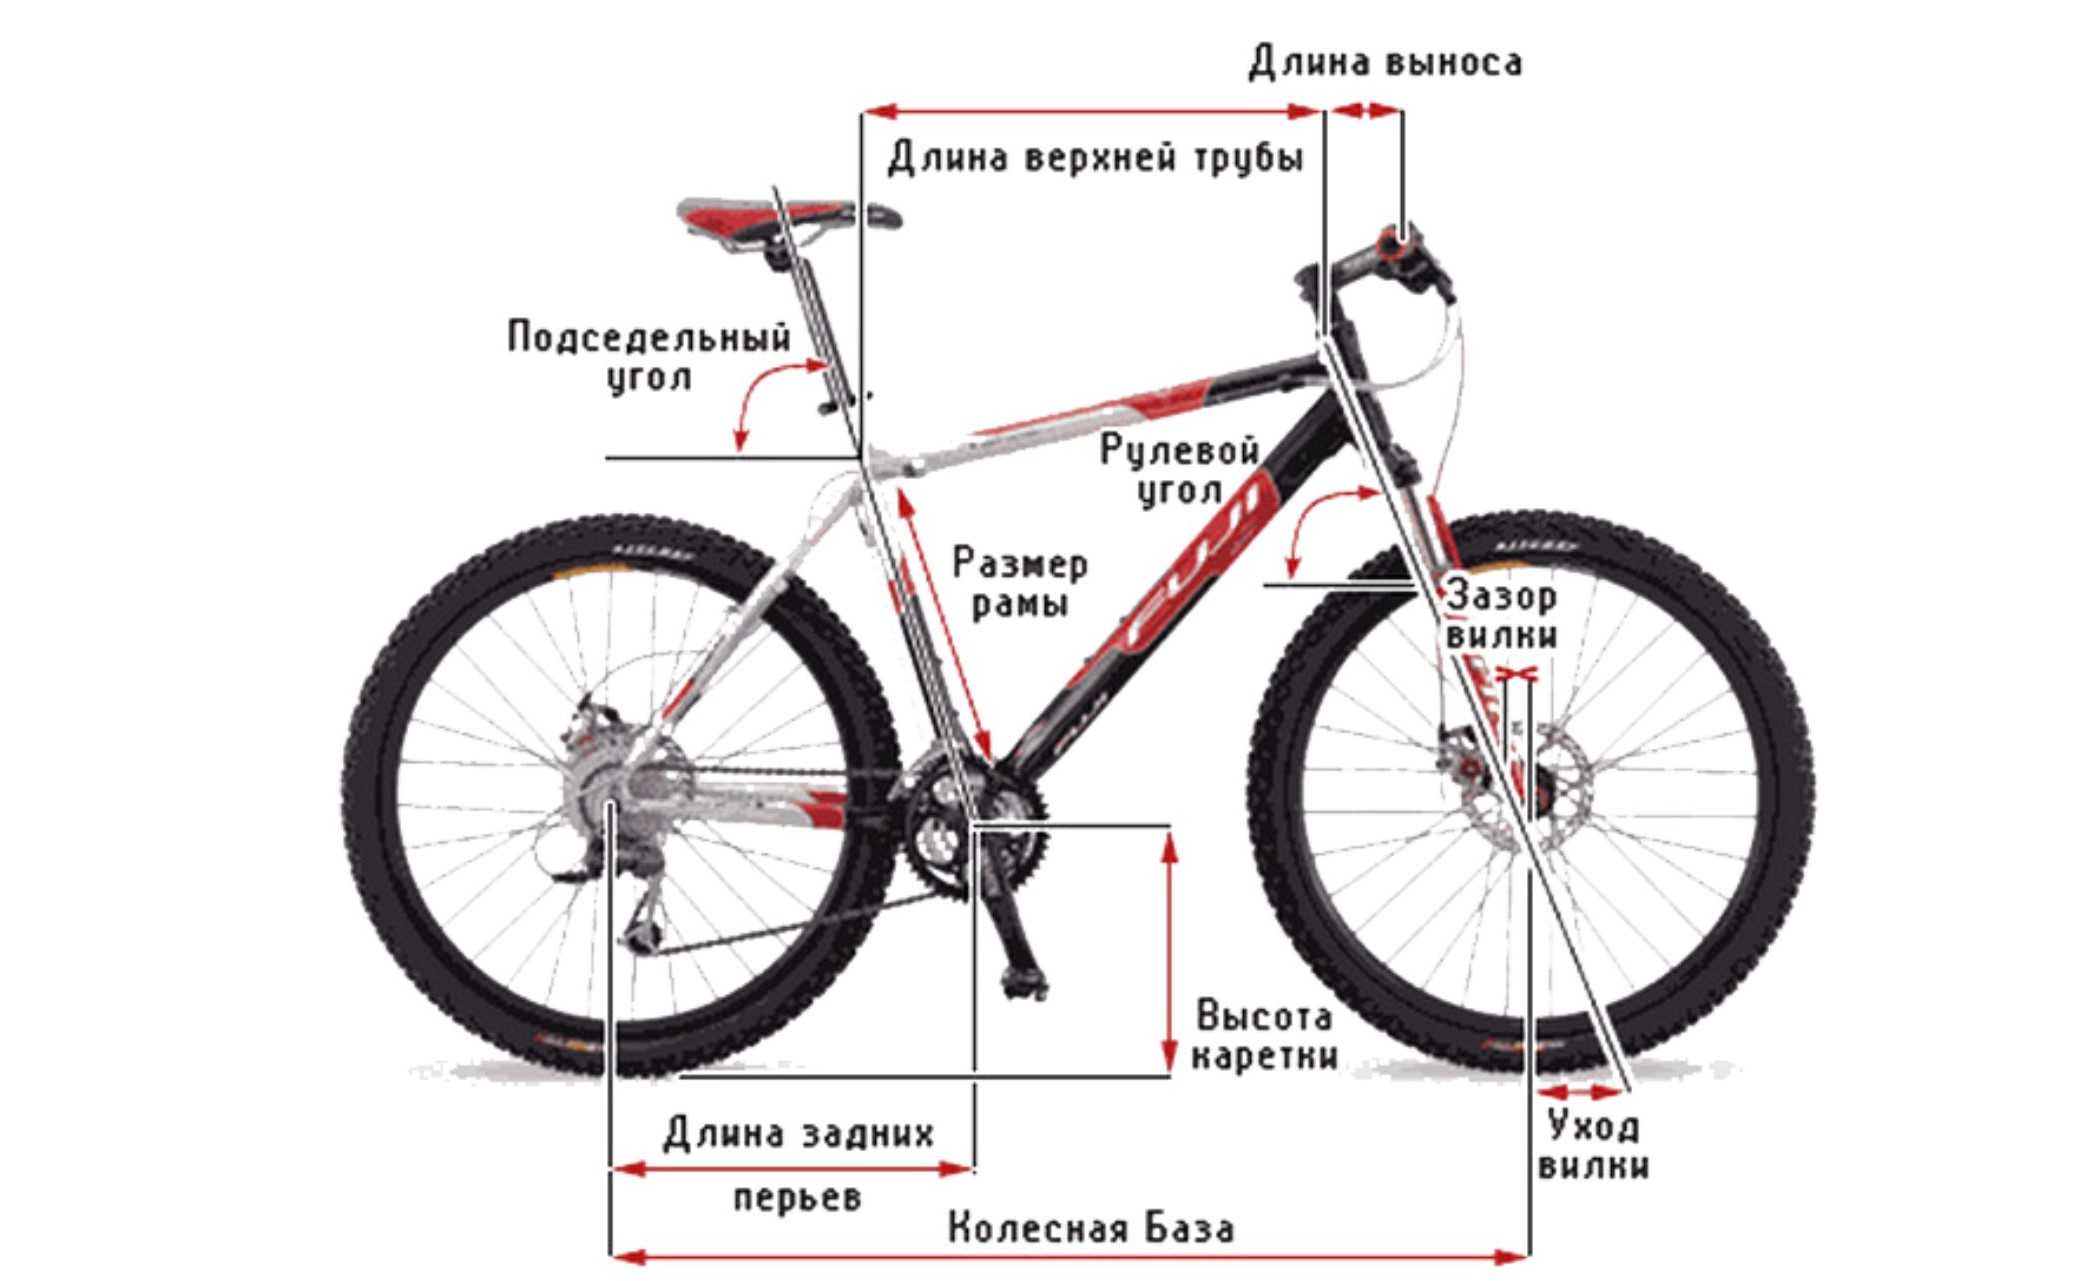 Горный велосипед высота руля. Размер рамы велосипеда с диаметром колеса 27.5. Размер рамы - 16 " размер колес - 26 ". Длина велосипеда 27.5 с колёсами. Размер рамы 17,5, колеса 26.